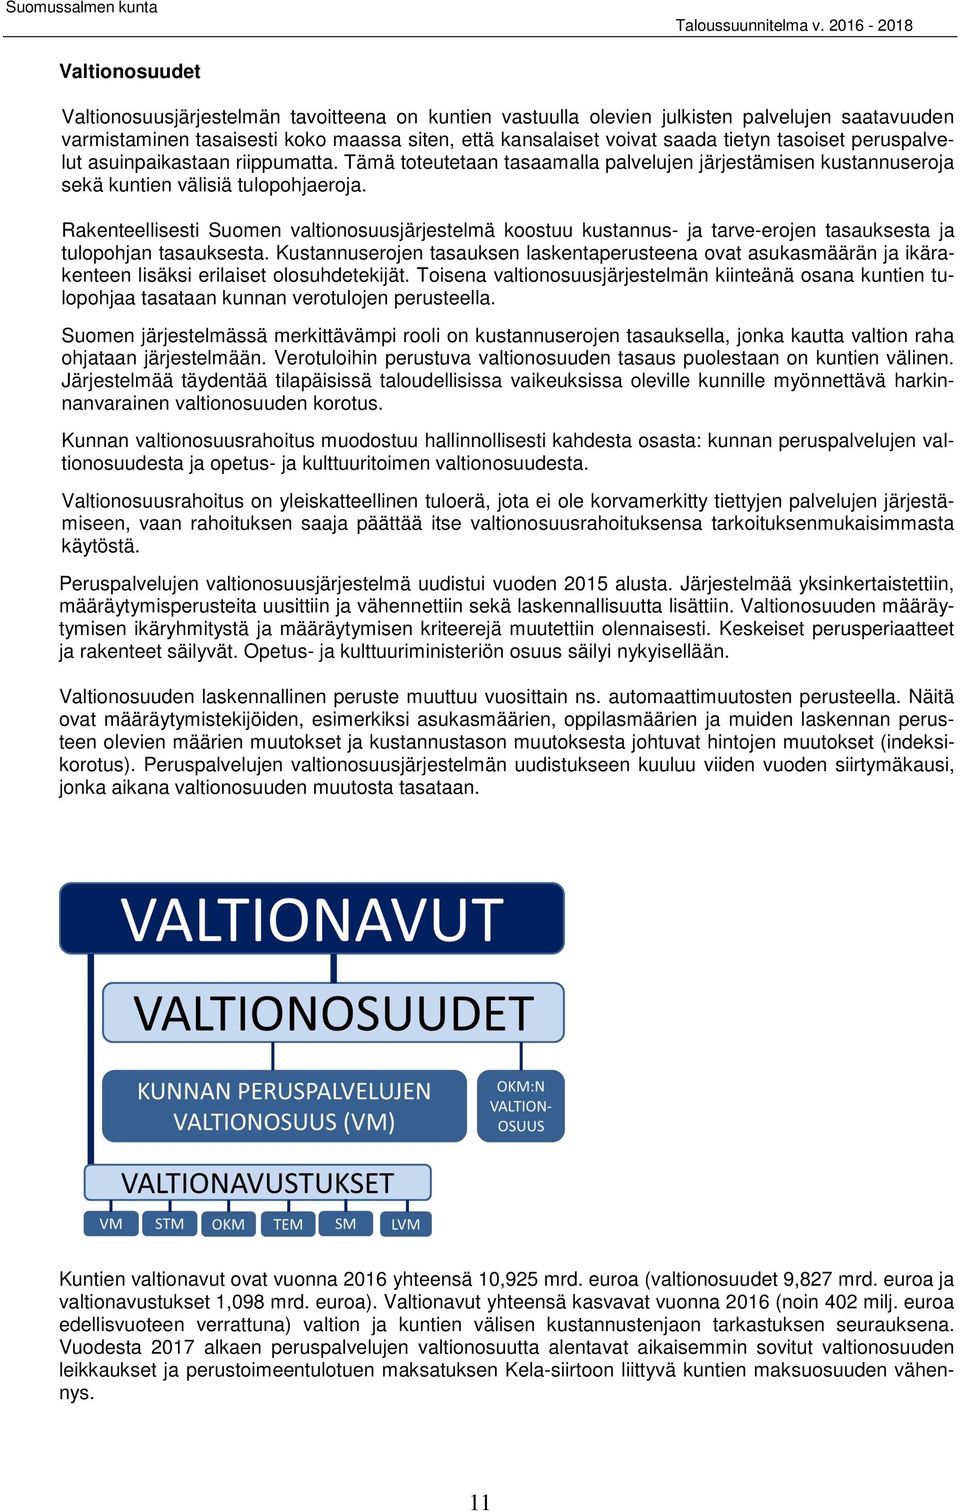 Rakenteellisesti Suomen valtionosuusjärjestelmä koostuu kustannus- ja tarve-erojen tasauksesta ja tulopohjan tasauksesta.